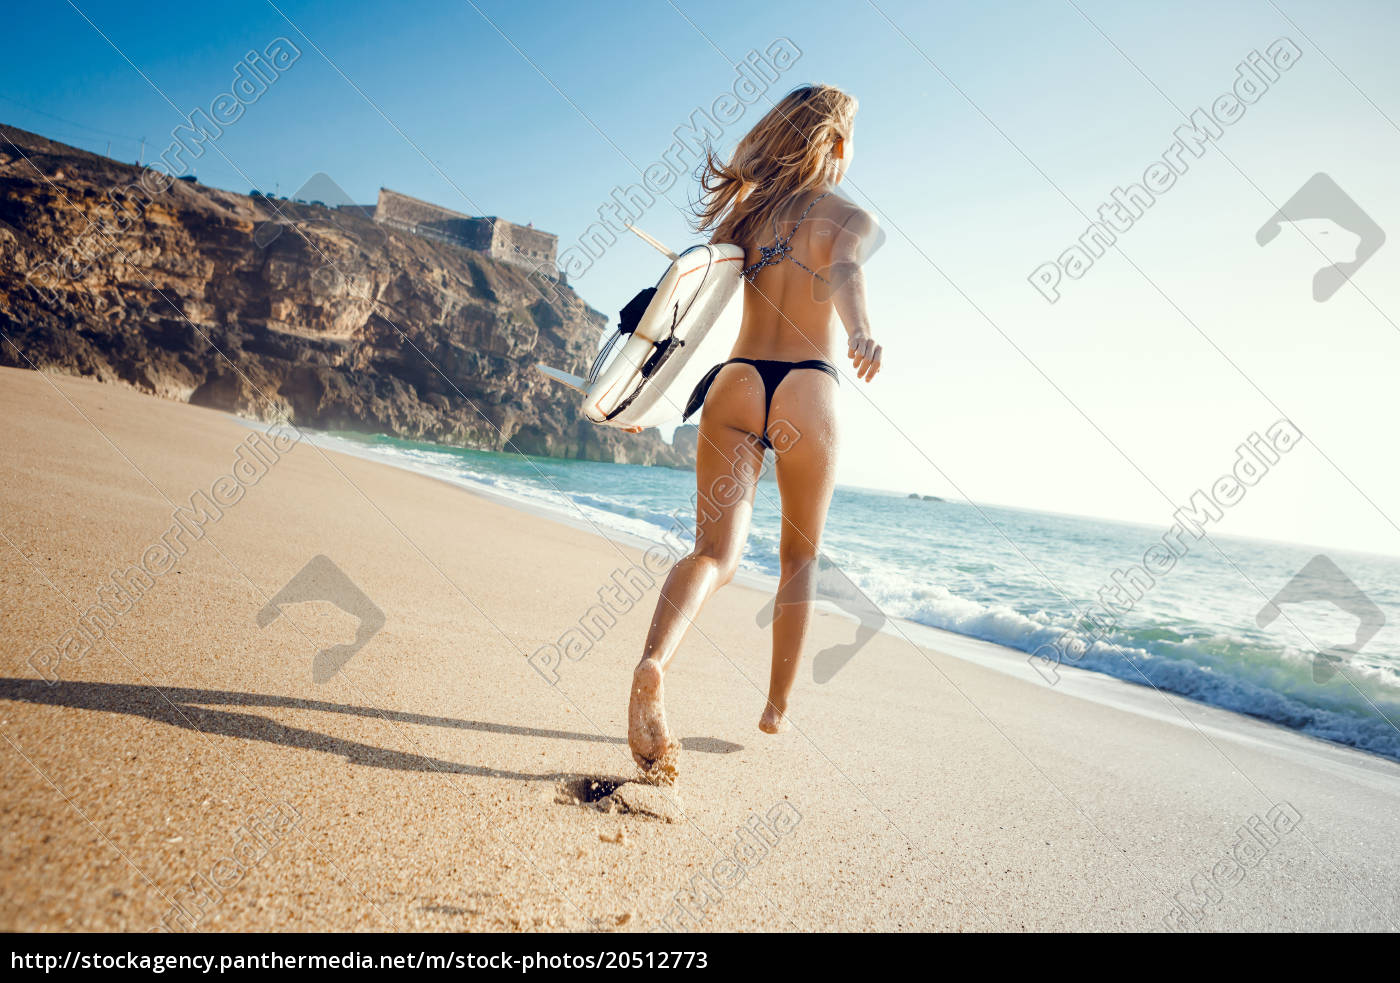 Sexy surfer girls